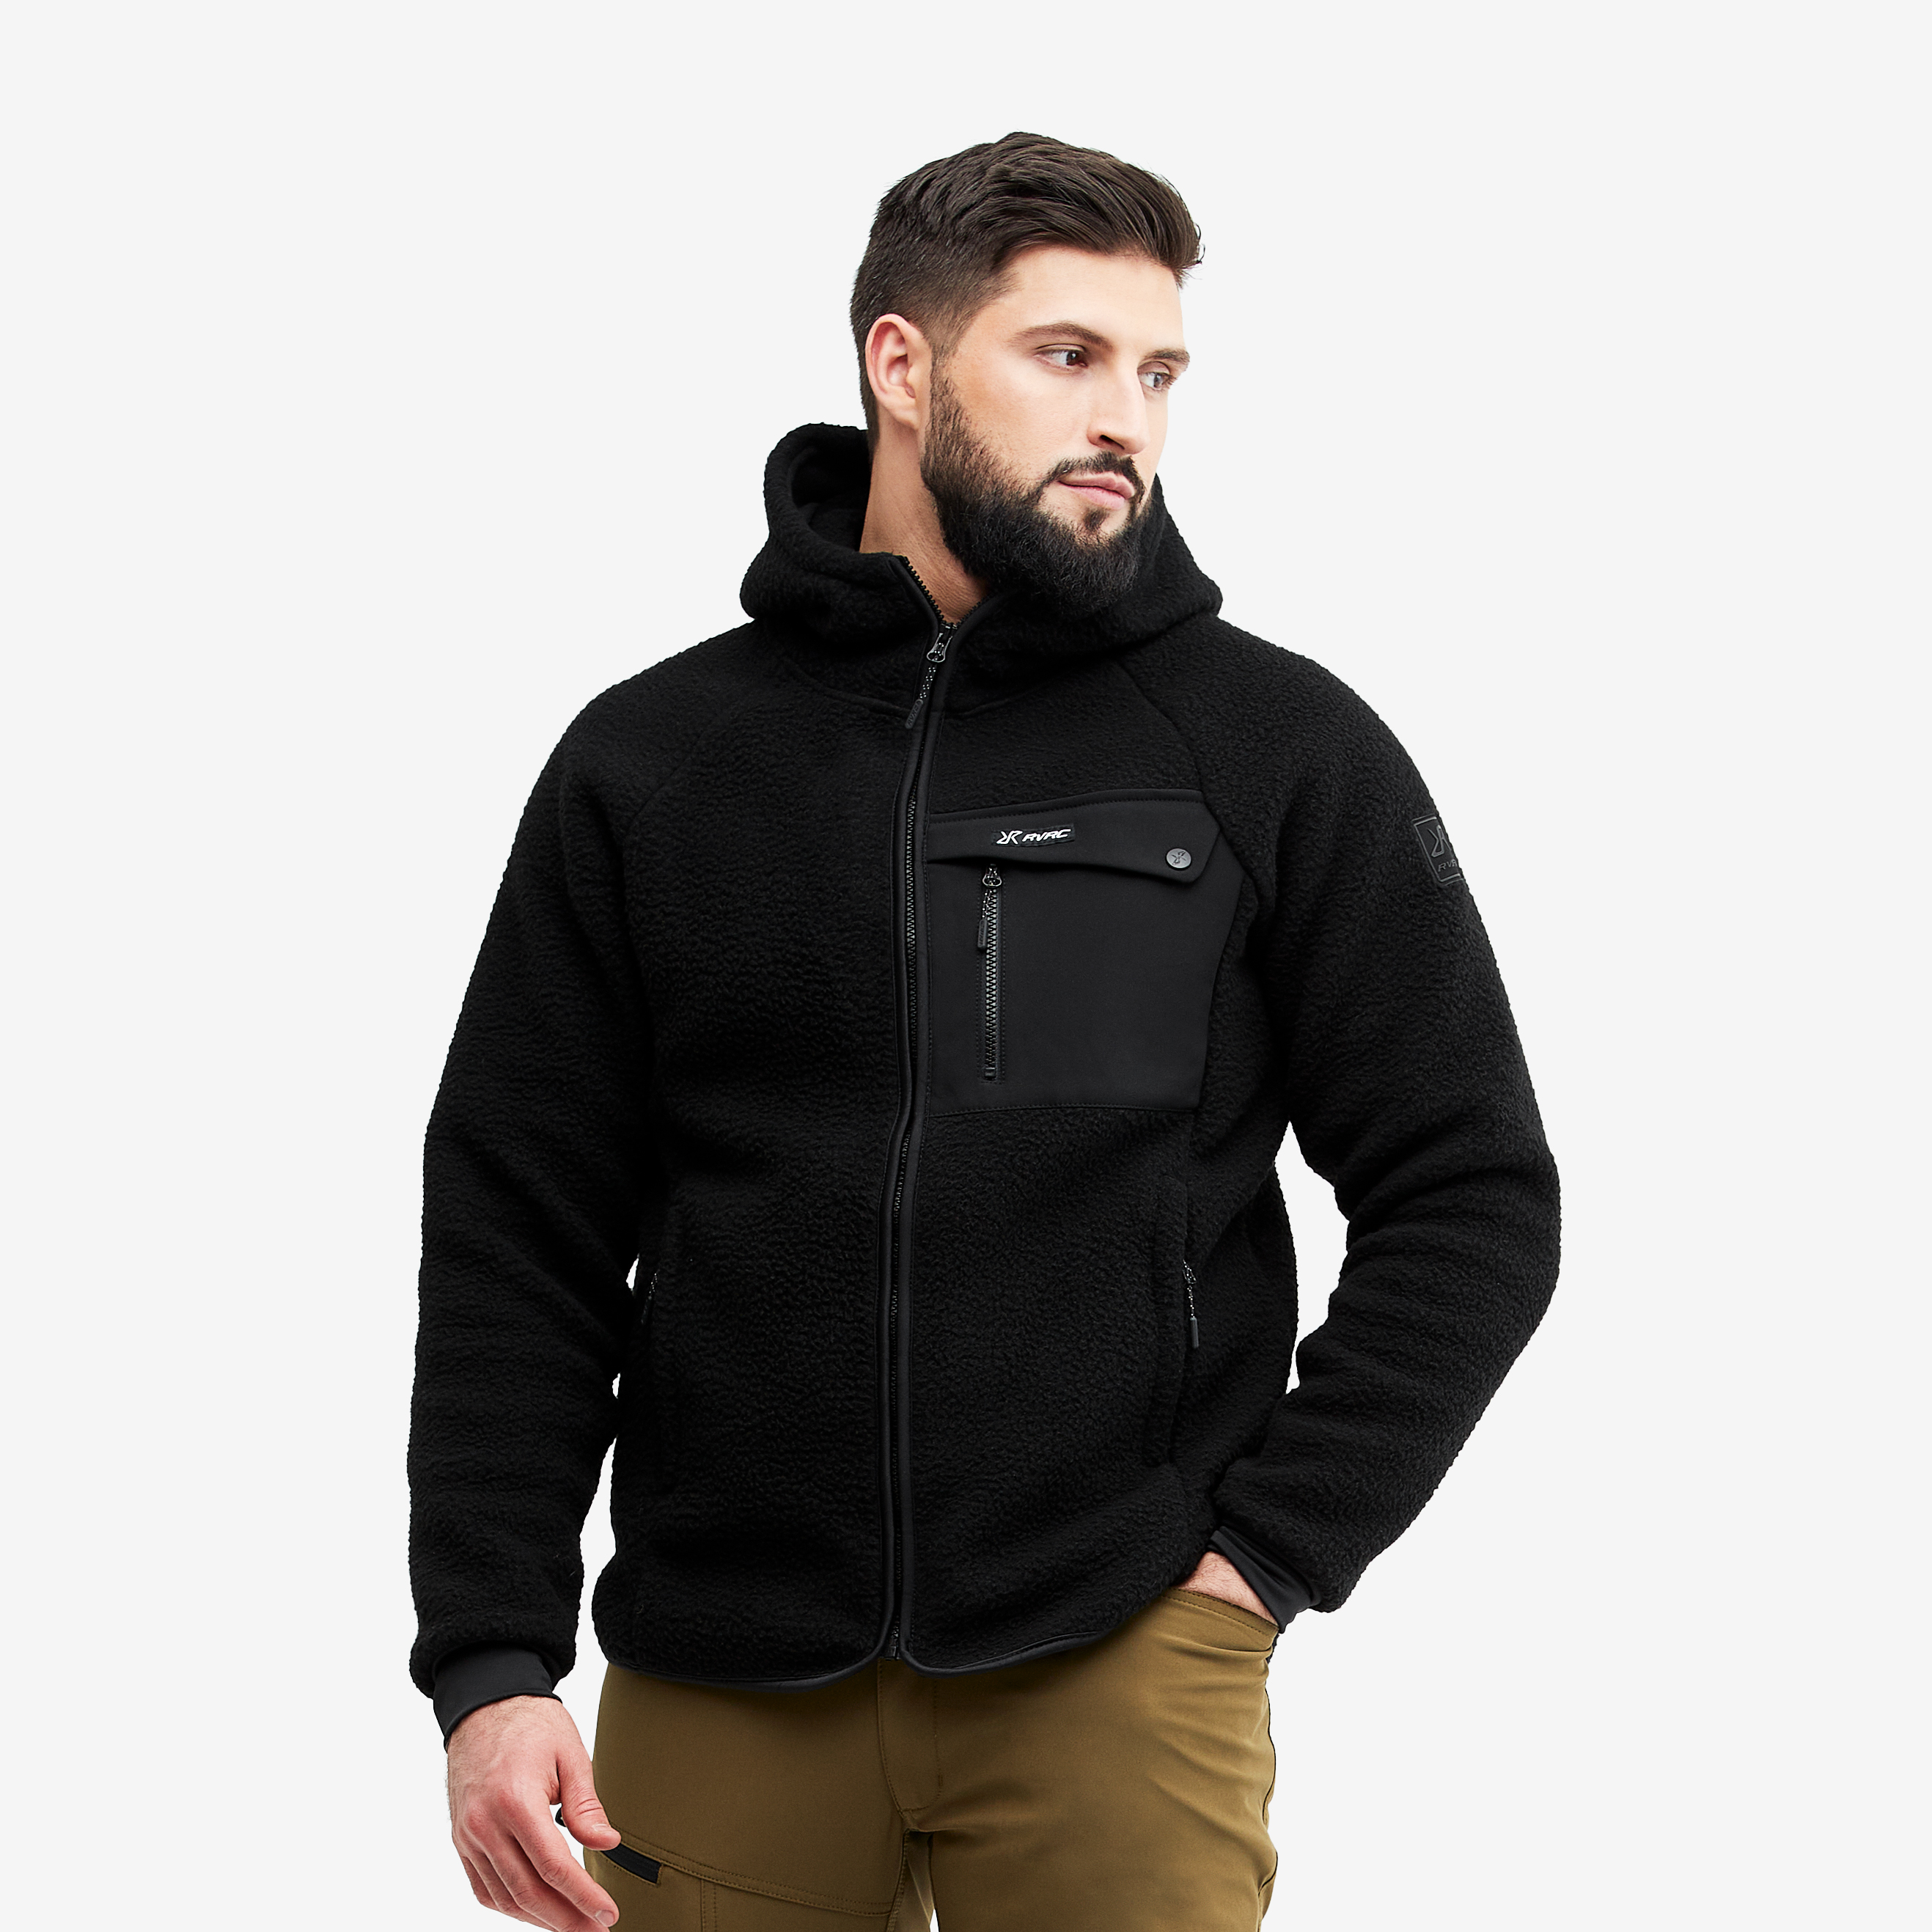 Sherpa Jacket Hooded Sales